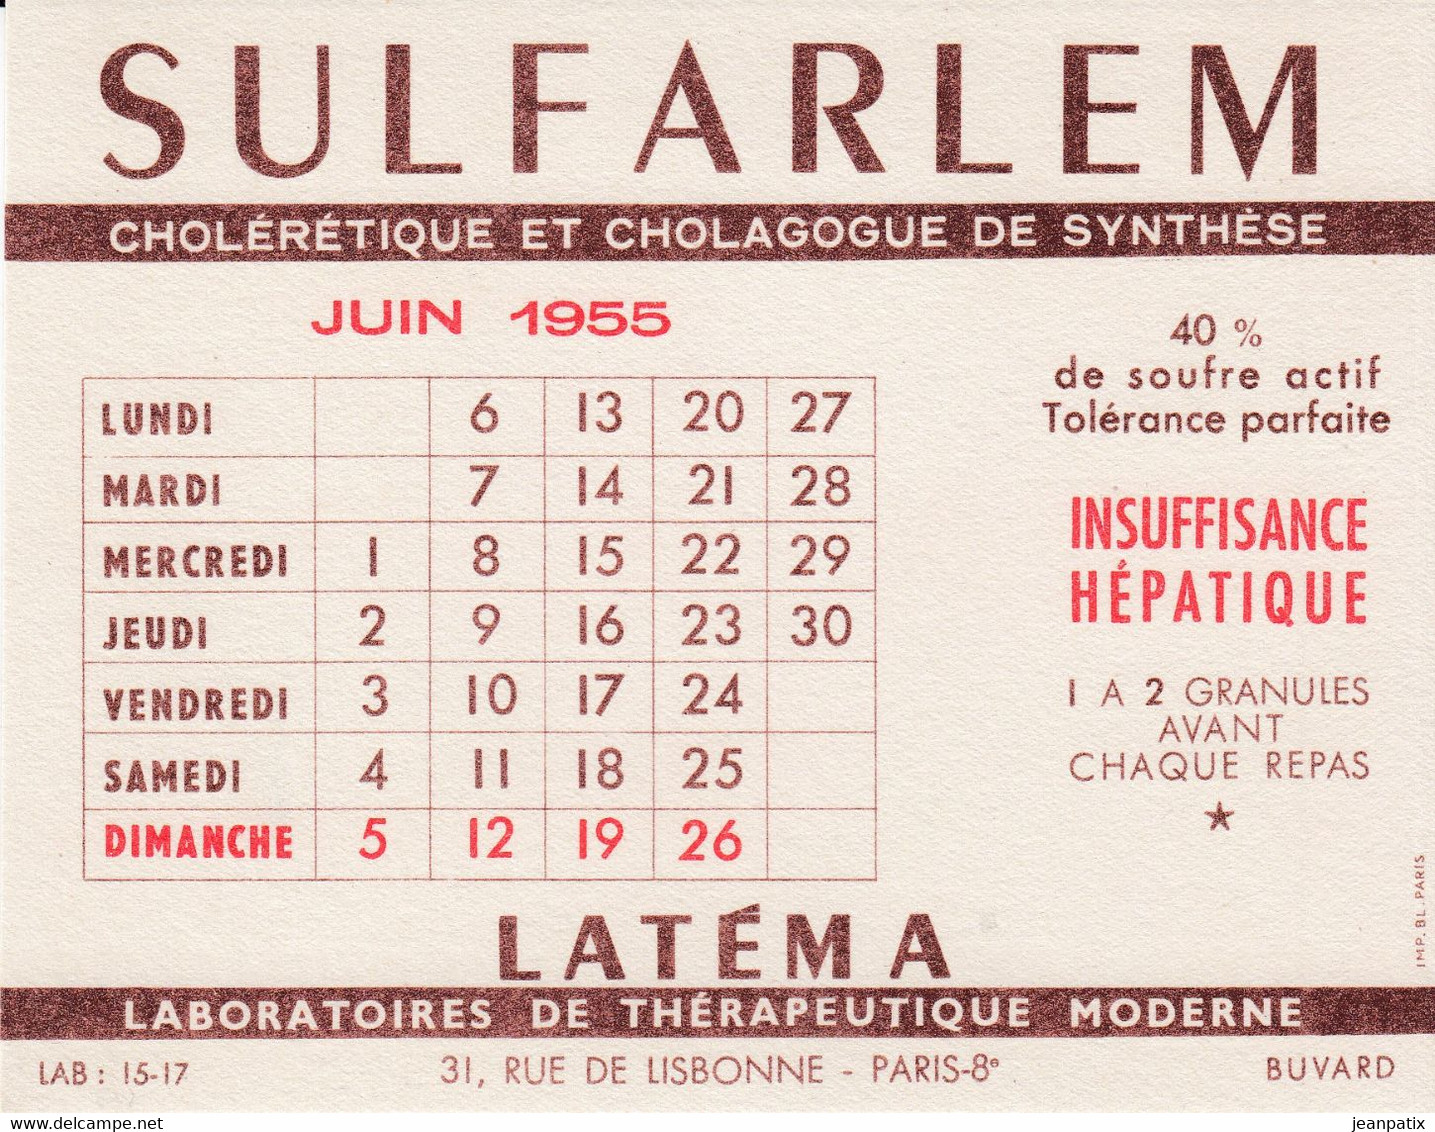 BUVARD & BLOTTER -  Pharmacie - SULFARLEM - Calendrier Juin 1955 - Produits Pharmaceutiques